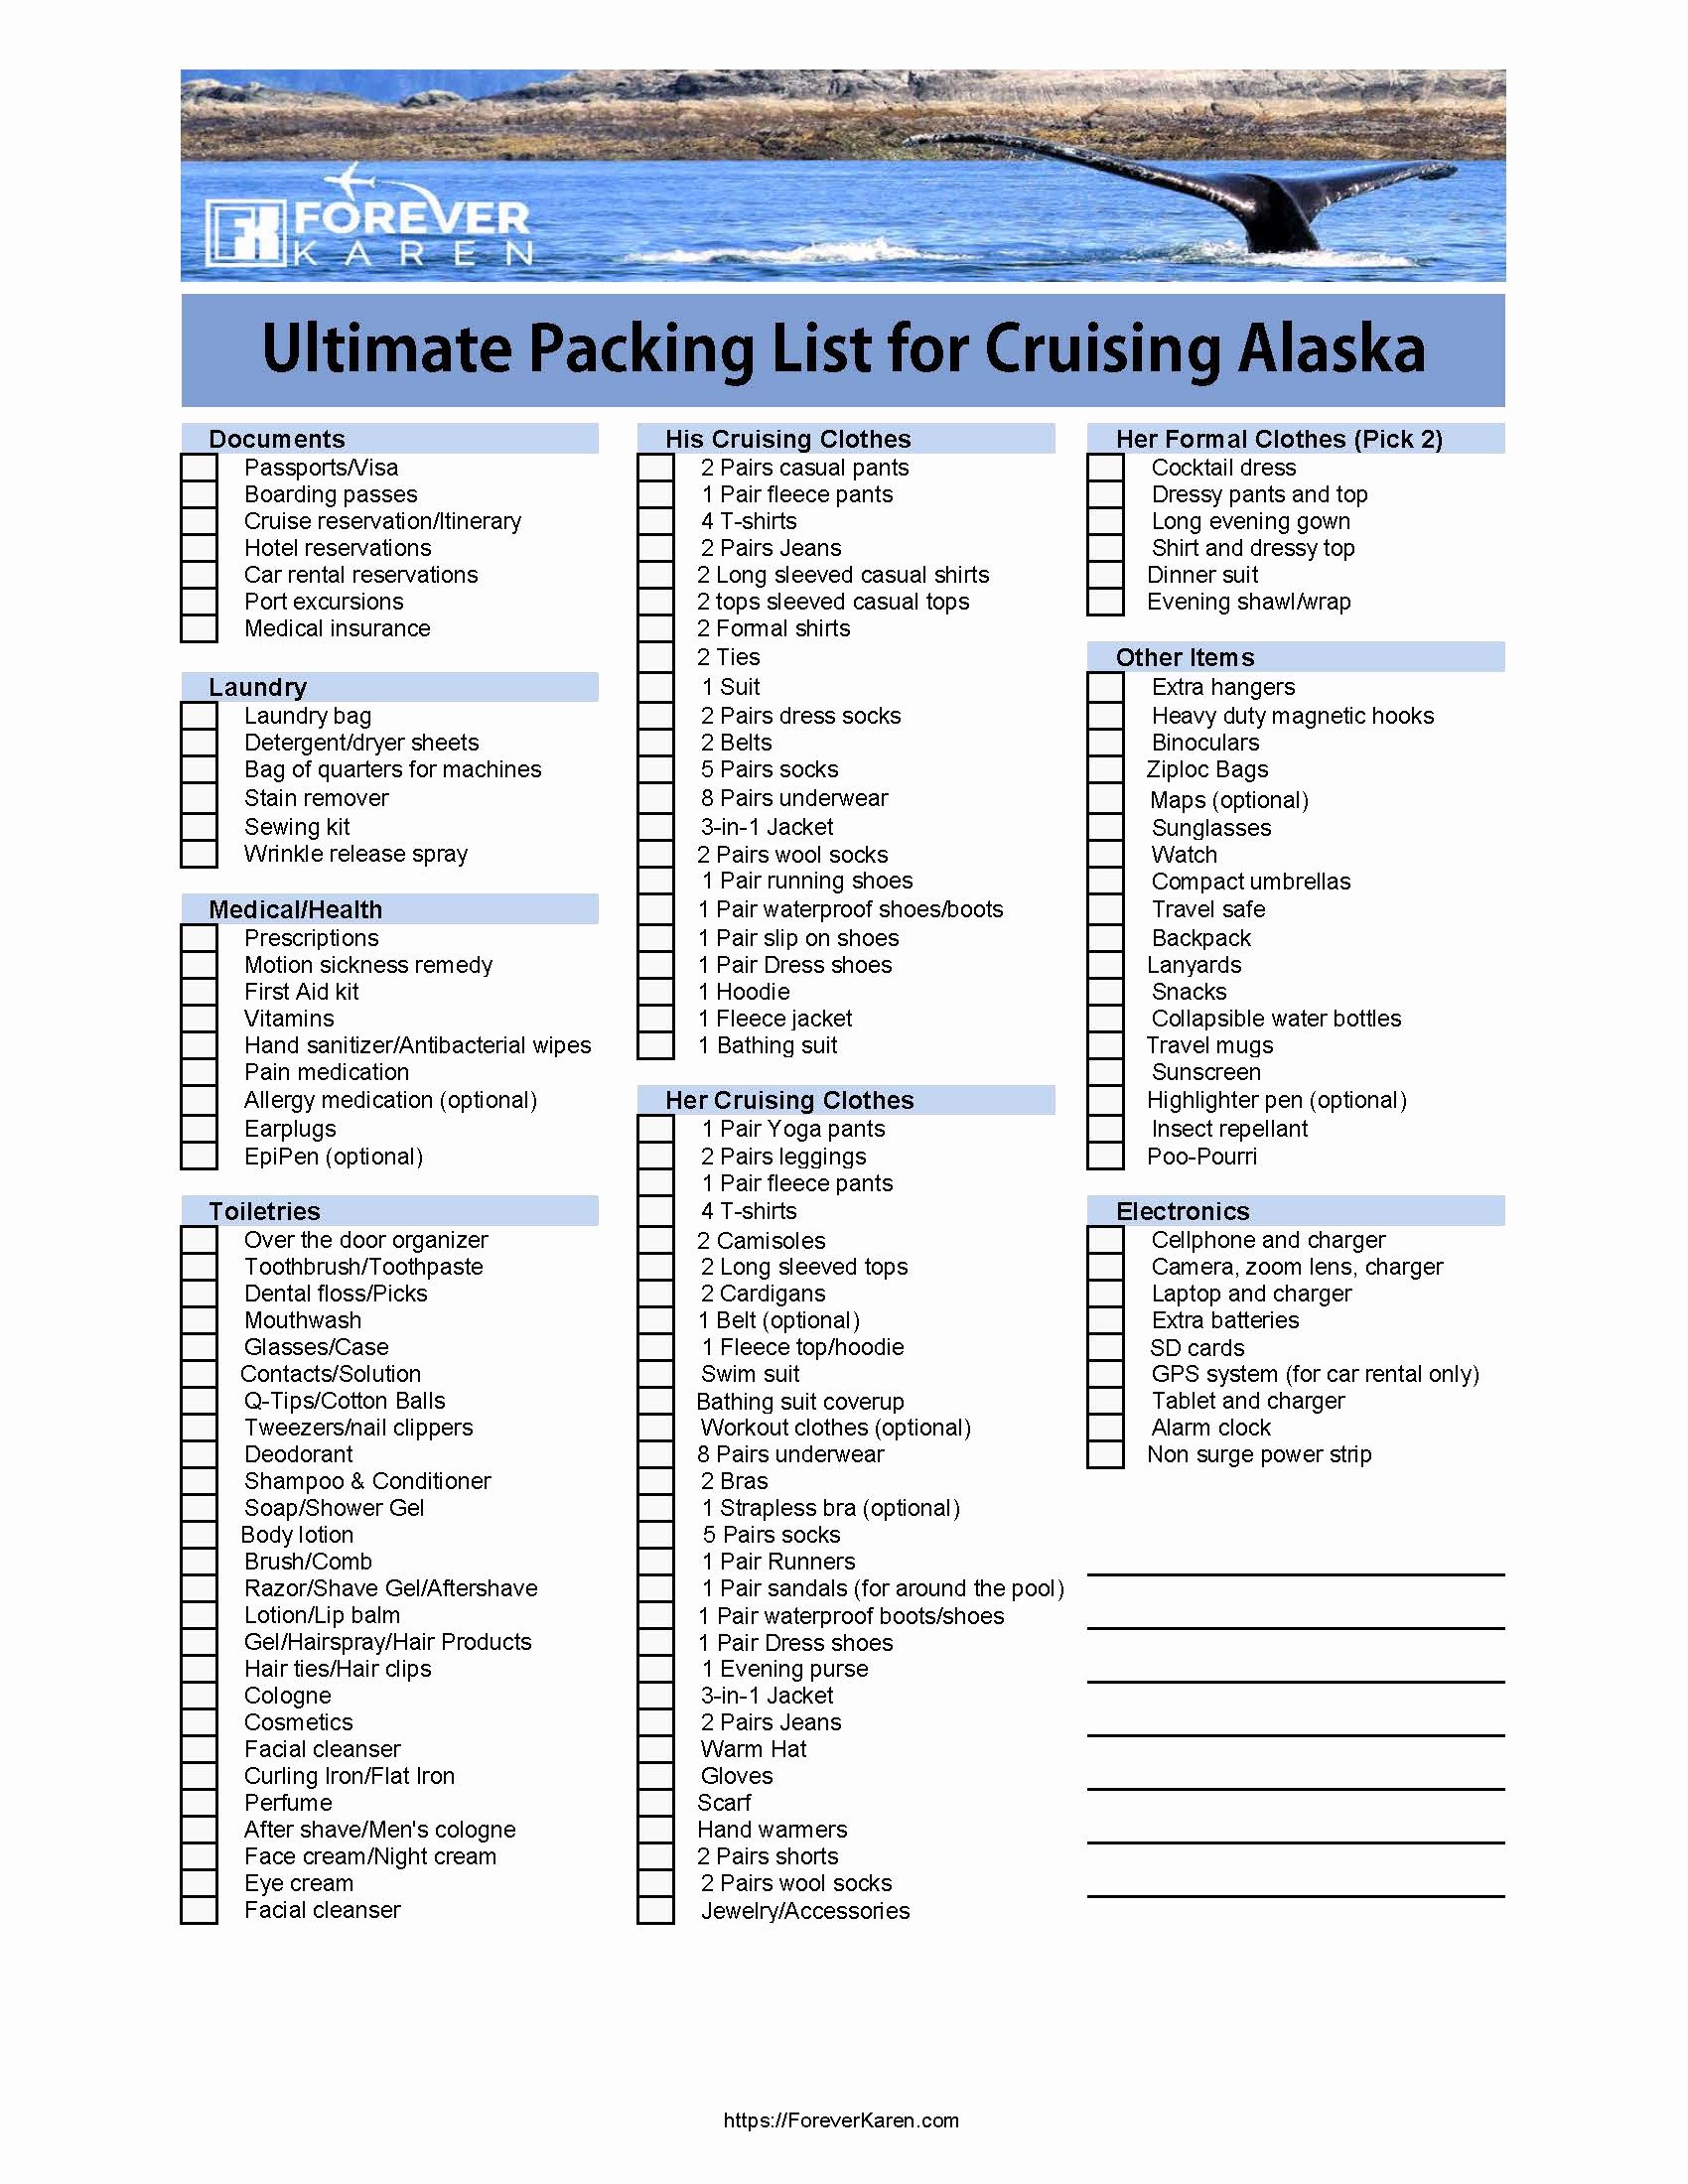 Ultimate Cruise Packing List Elegant Ultimate Packing List for Cruising Alaska forever Karen